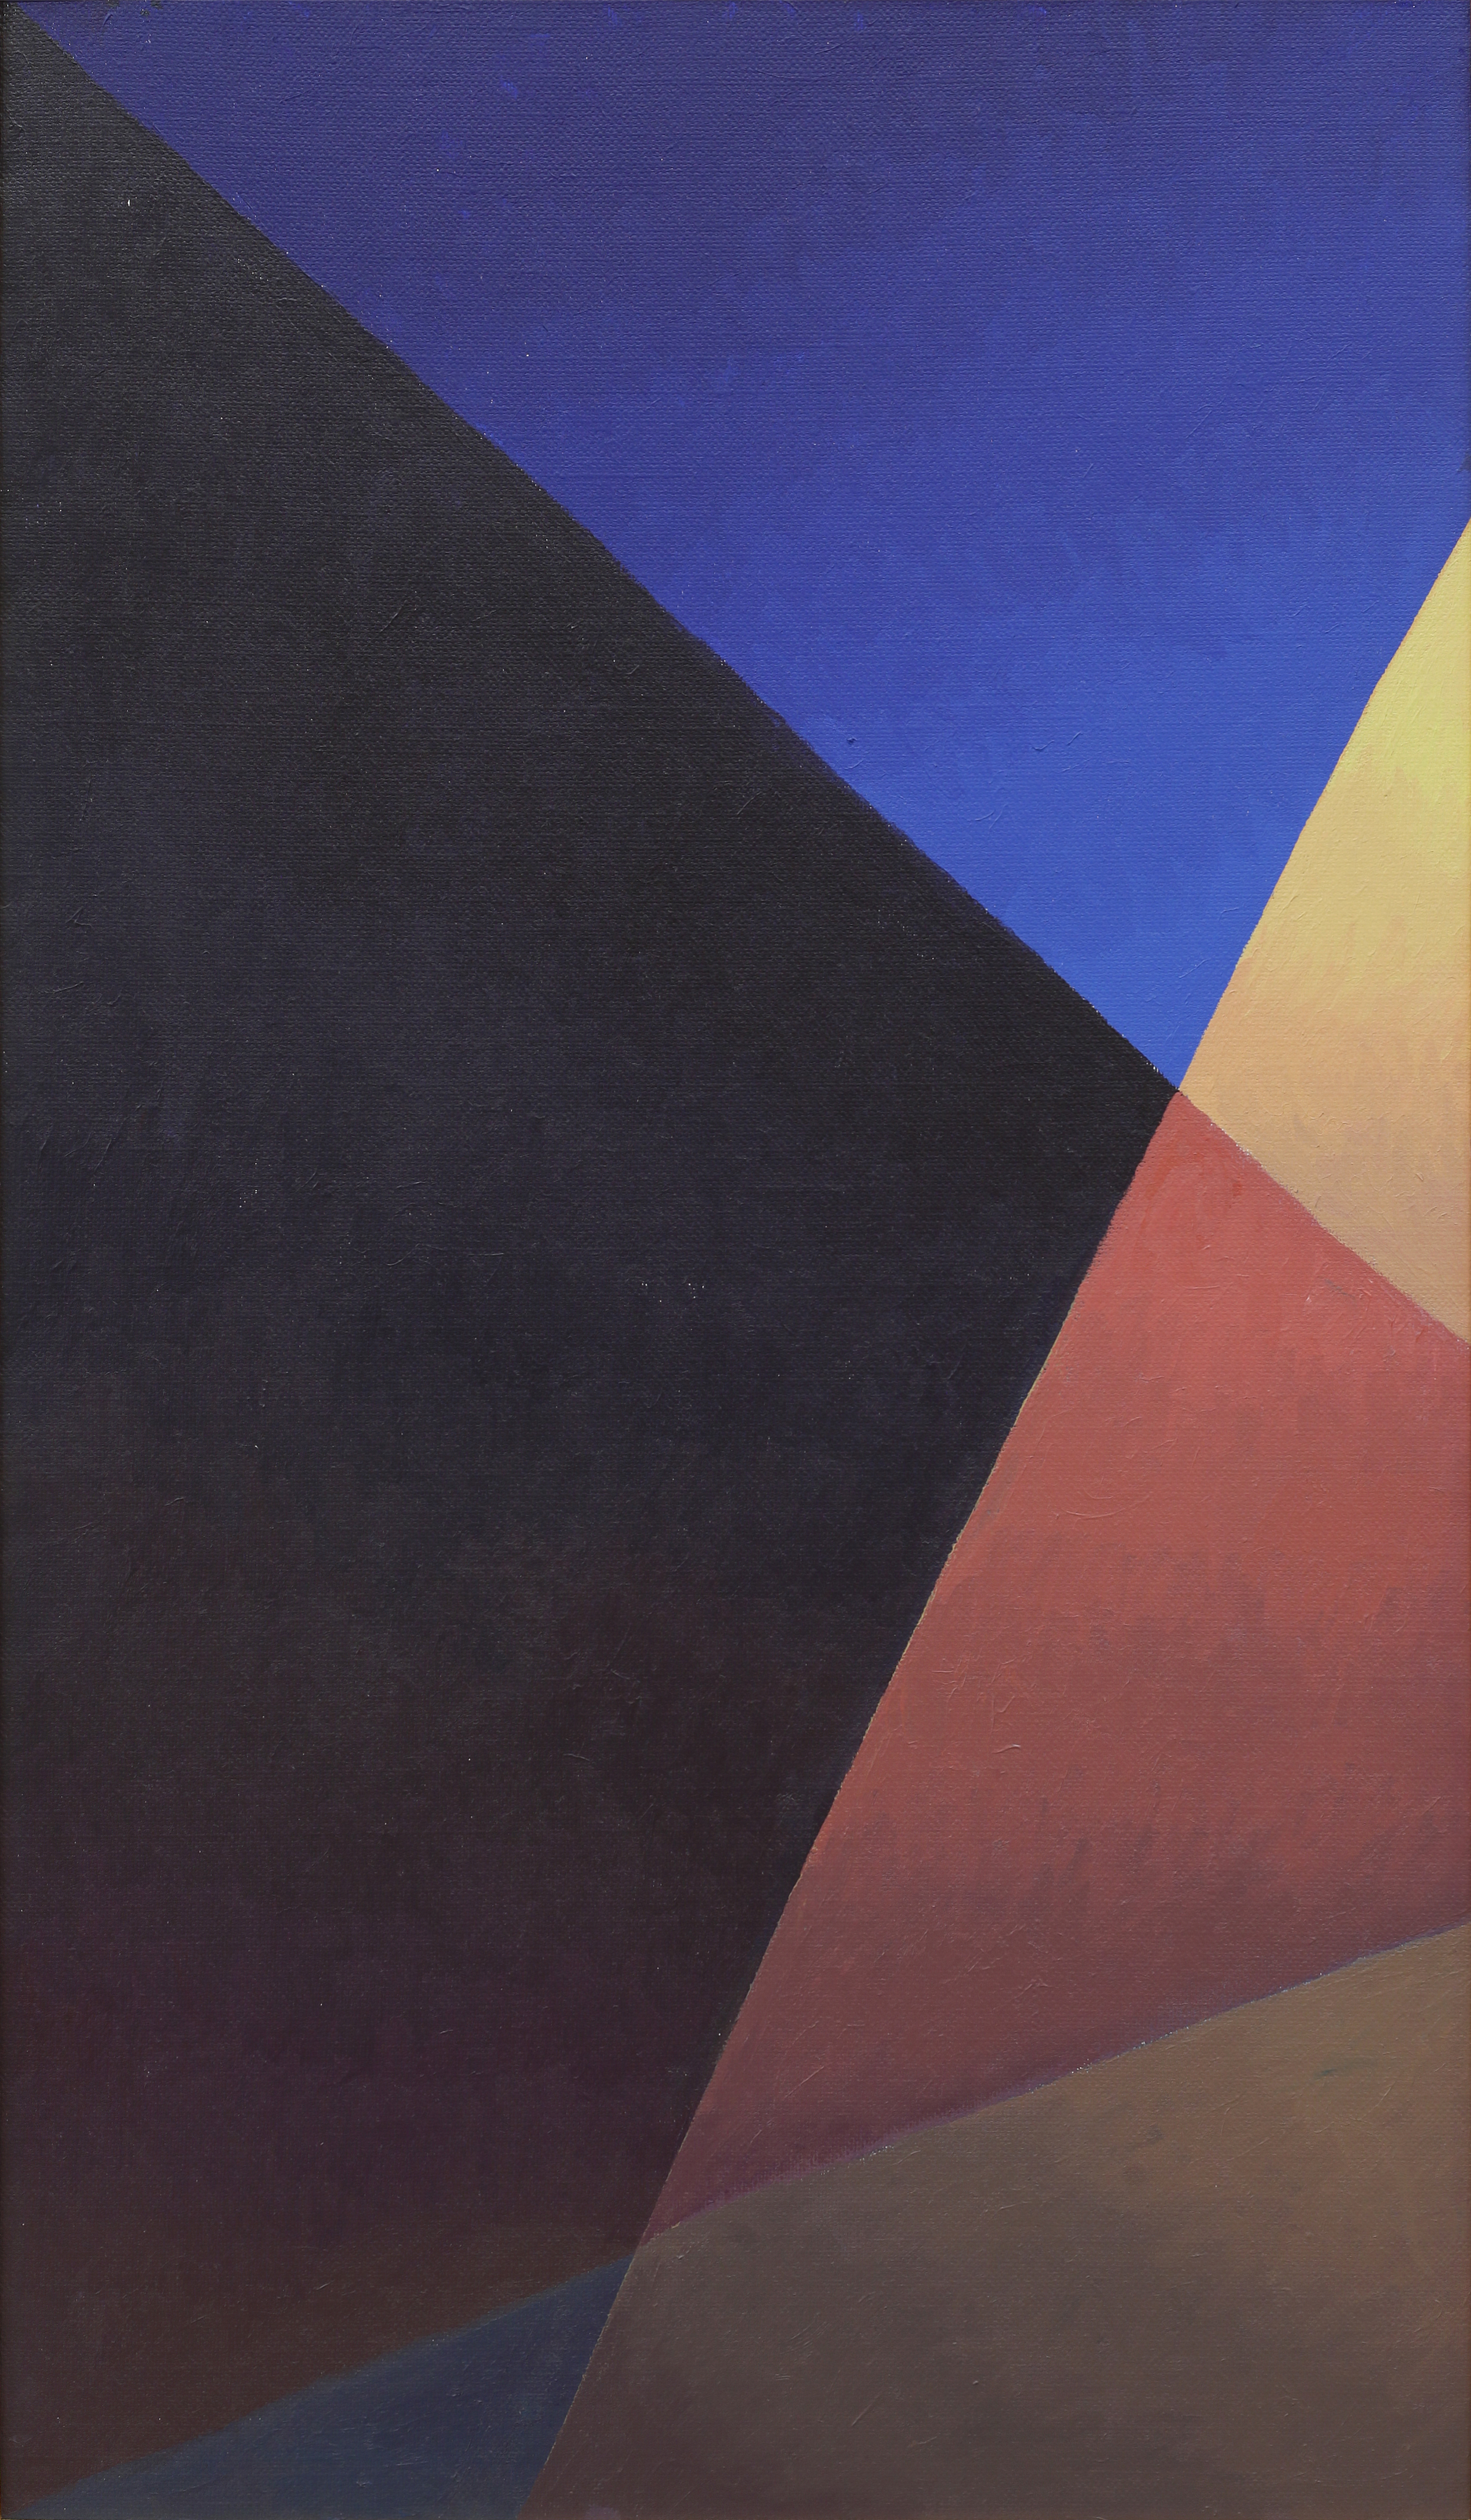 Salvo, Notte strada lampione, 1986, olio su tela, 120x70 cm